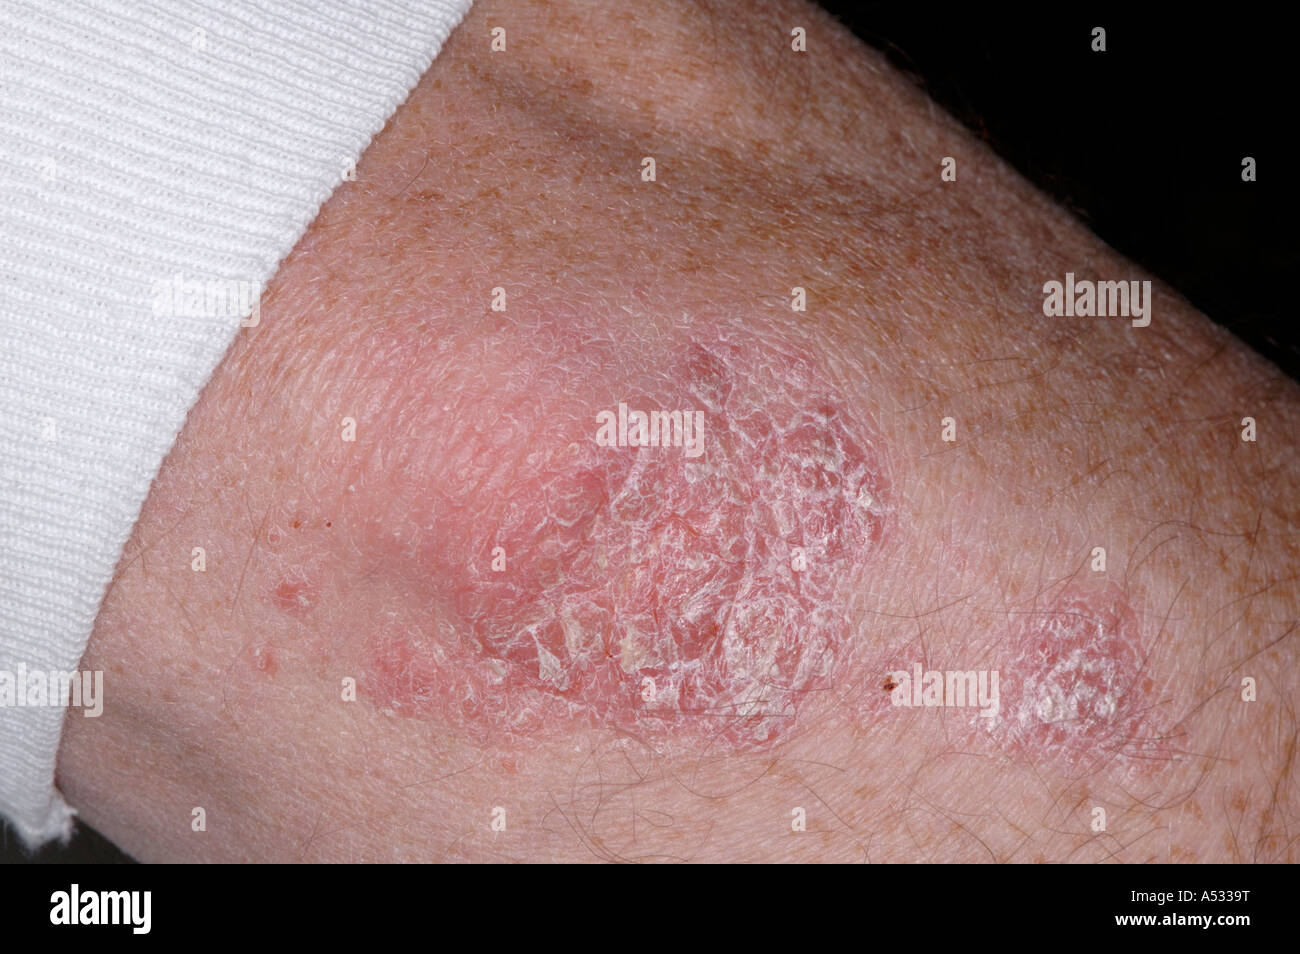 Le psoriasis en plaques close-up sur le coude Photo Stock - Alamy